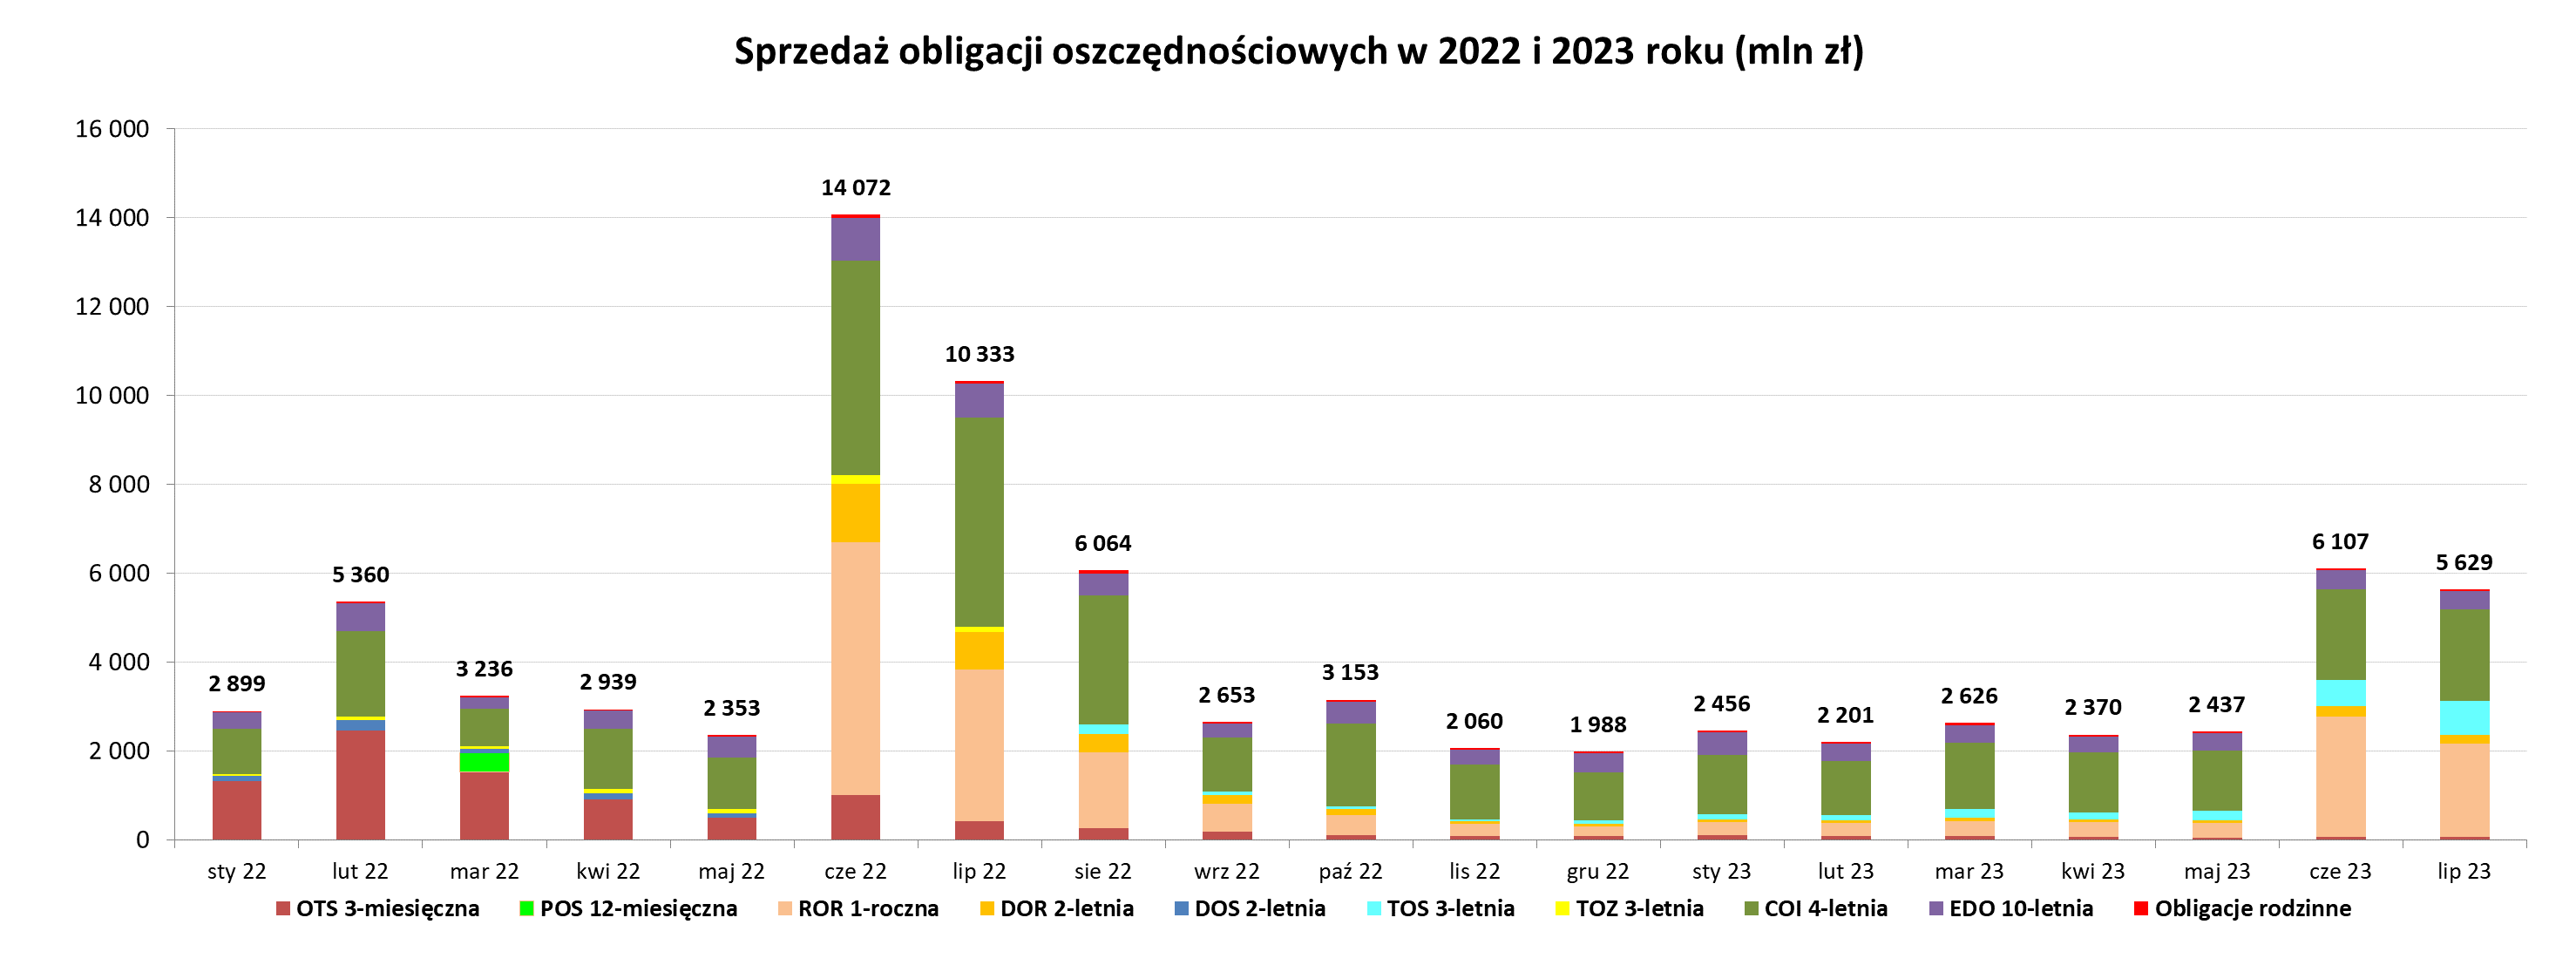 Wykres słupkowy przedstawiający sprzedaż obligacji oszczędnościowych w 2022 i 2023 roku (mln zł)